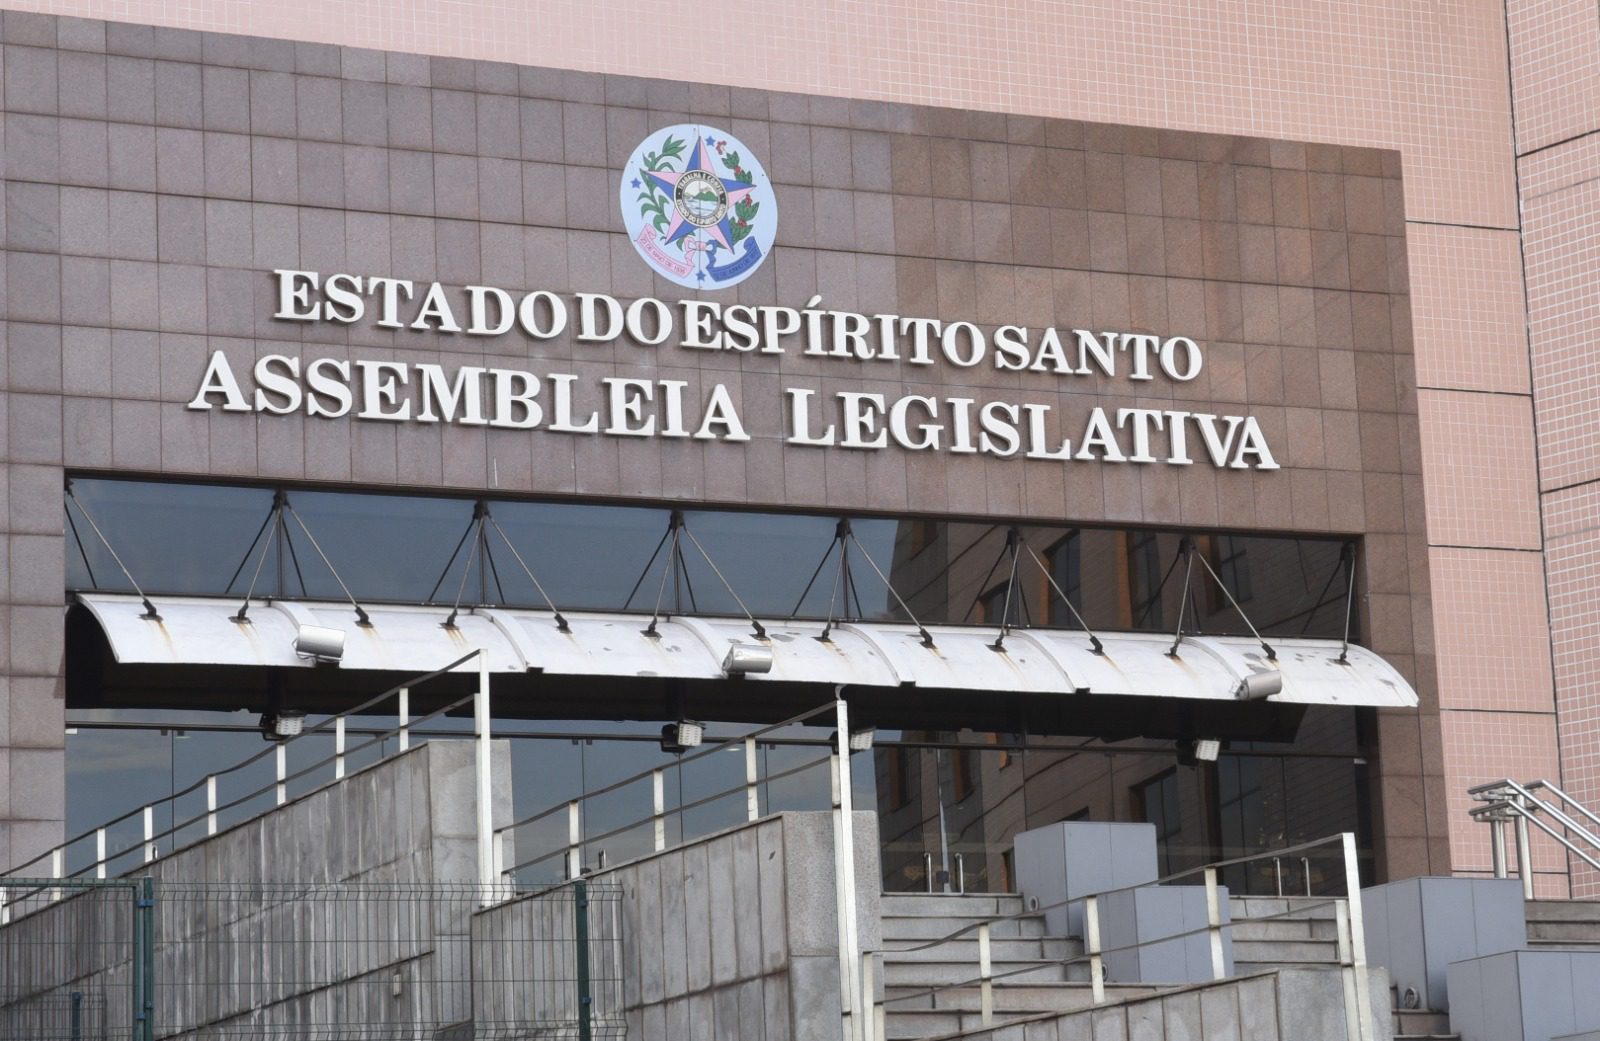 Diário Oficial do Legislativo Estadual terá notícias sobre trabalhos dos parlamentares